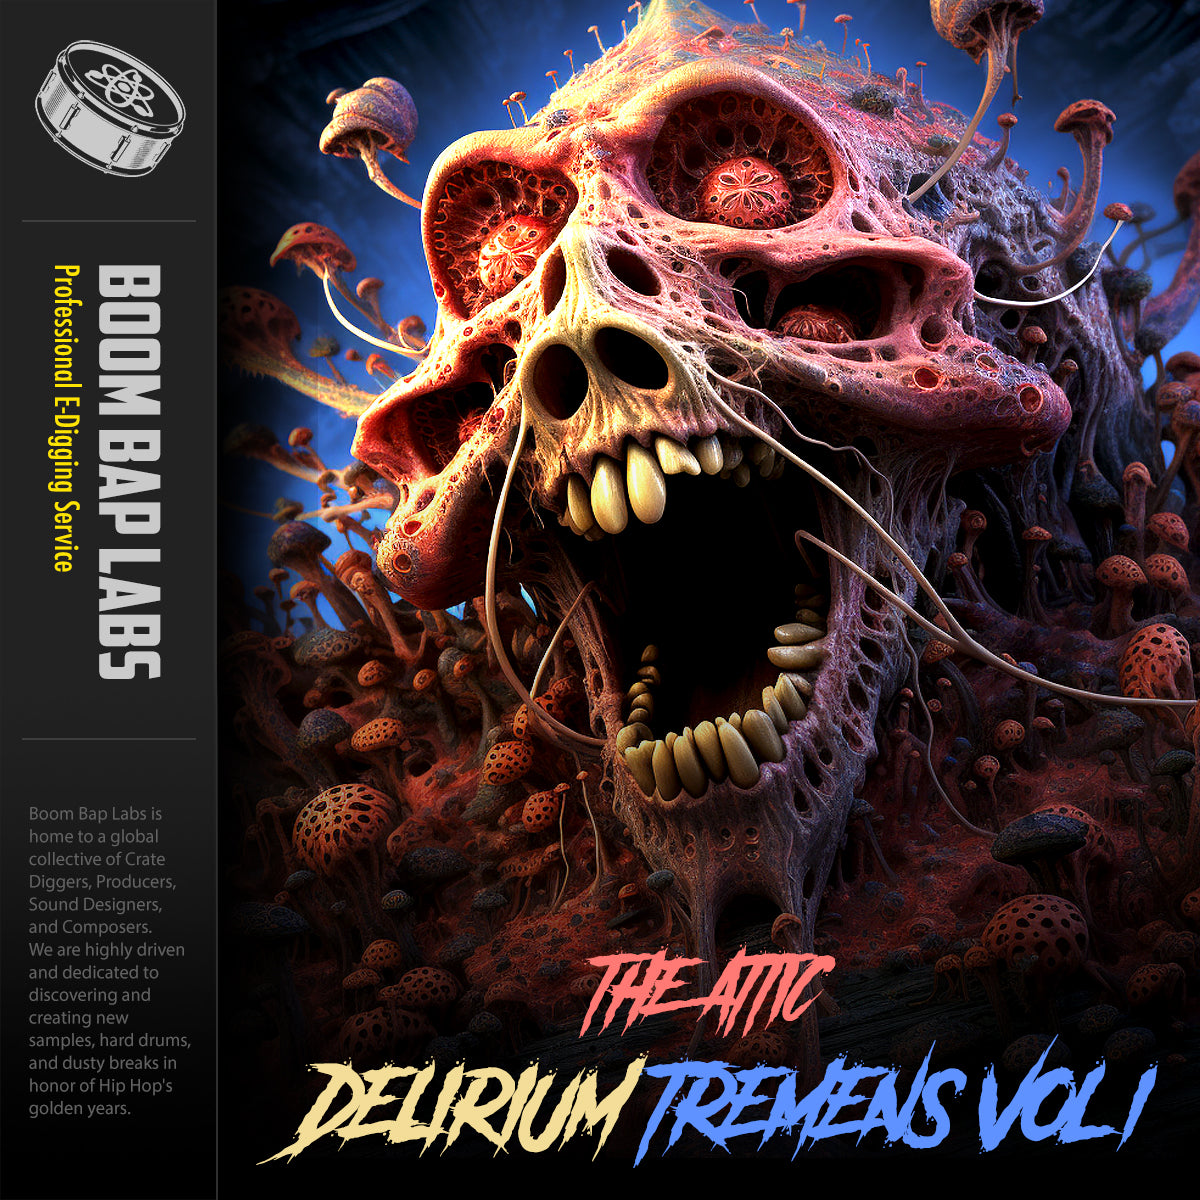 Delirium Tremens Vol 1